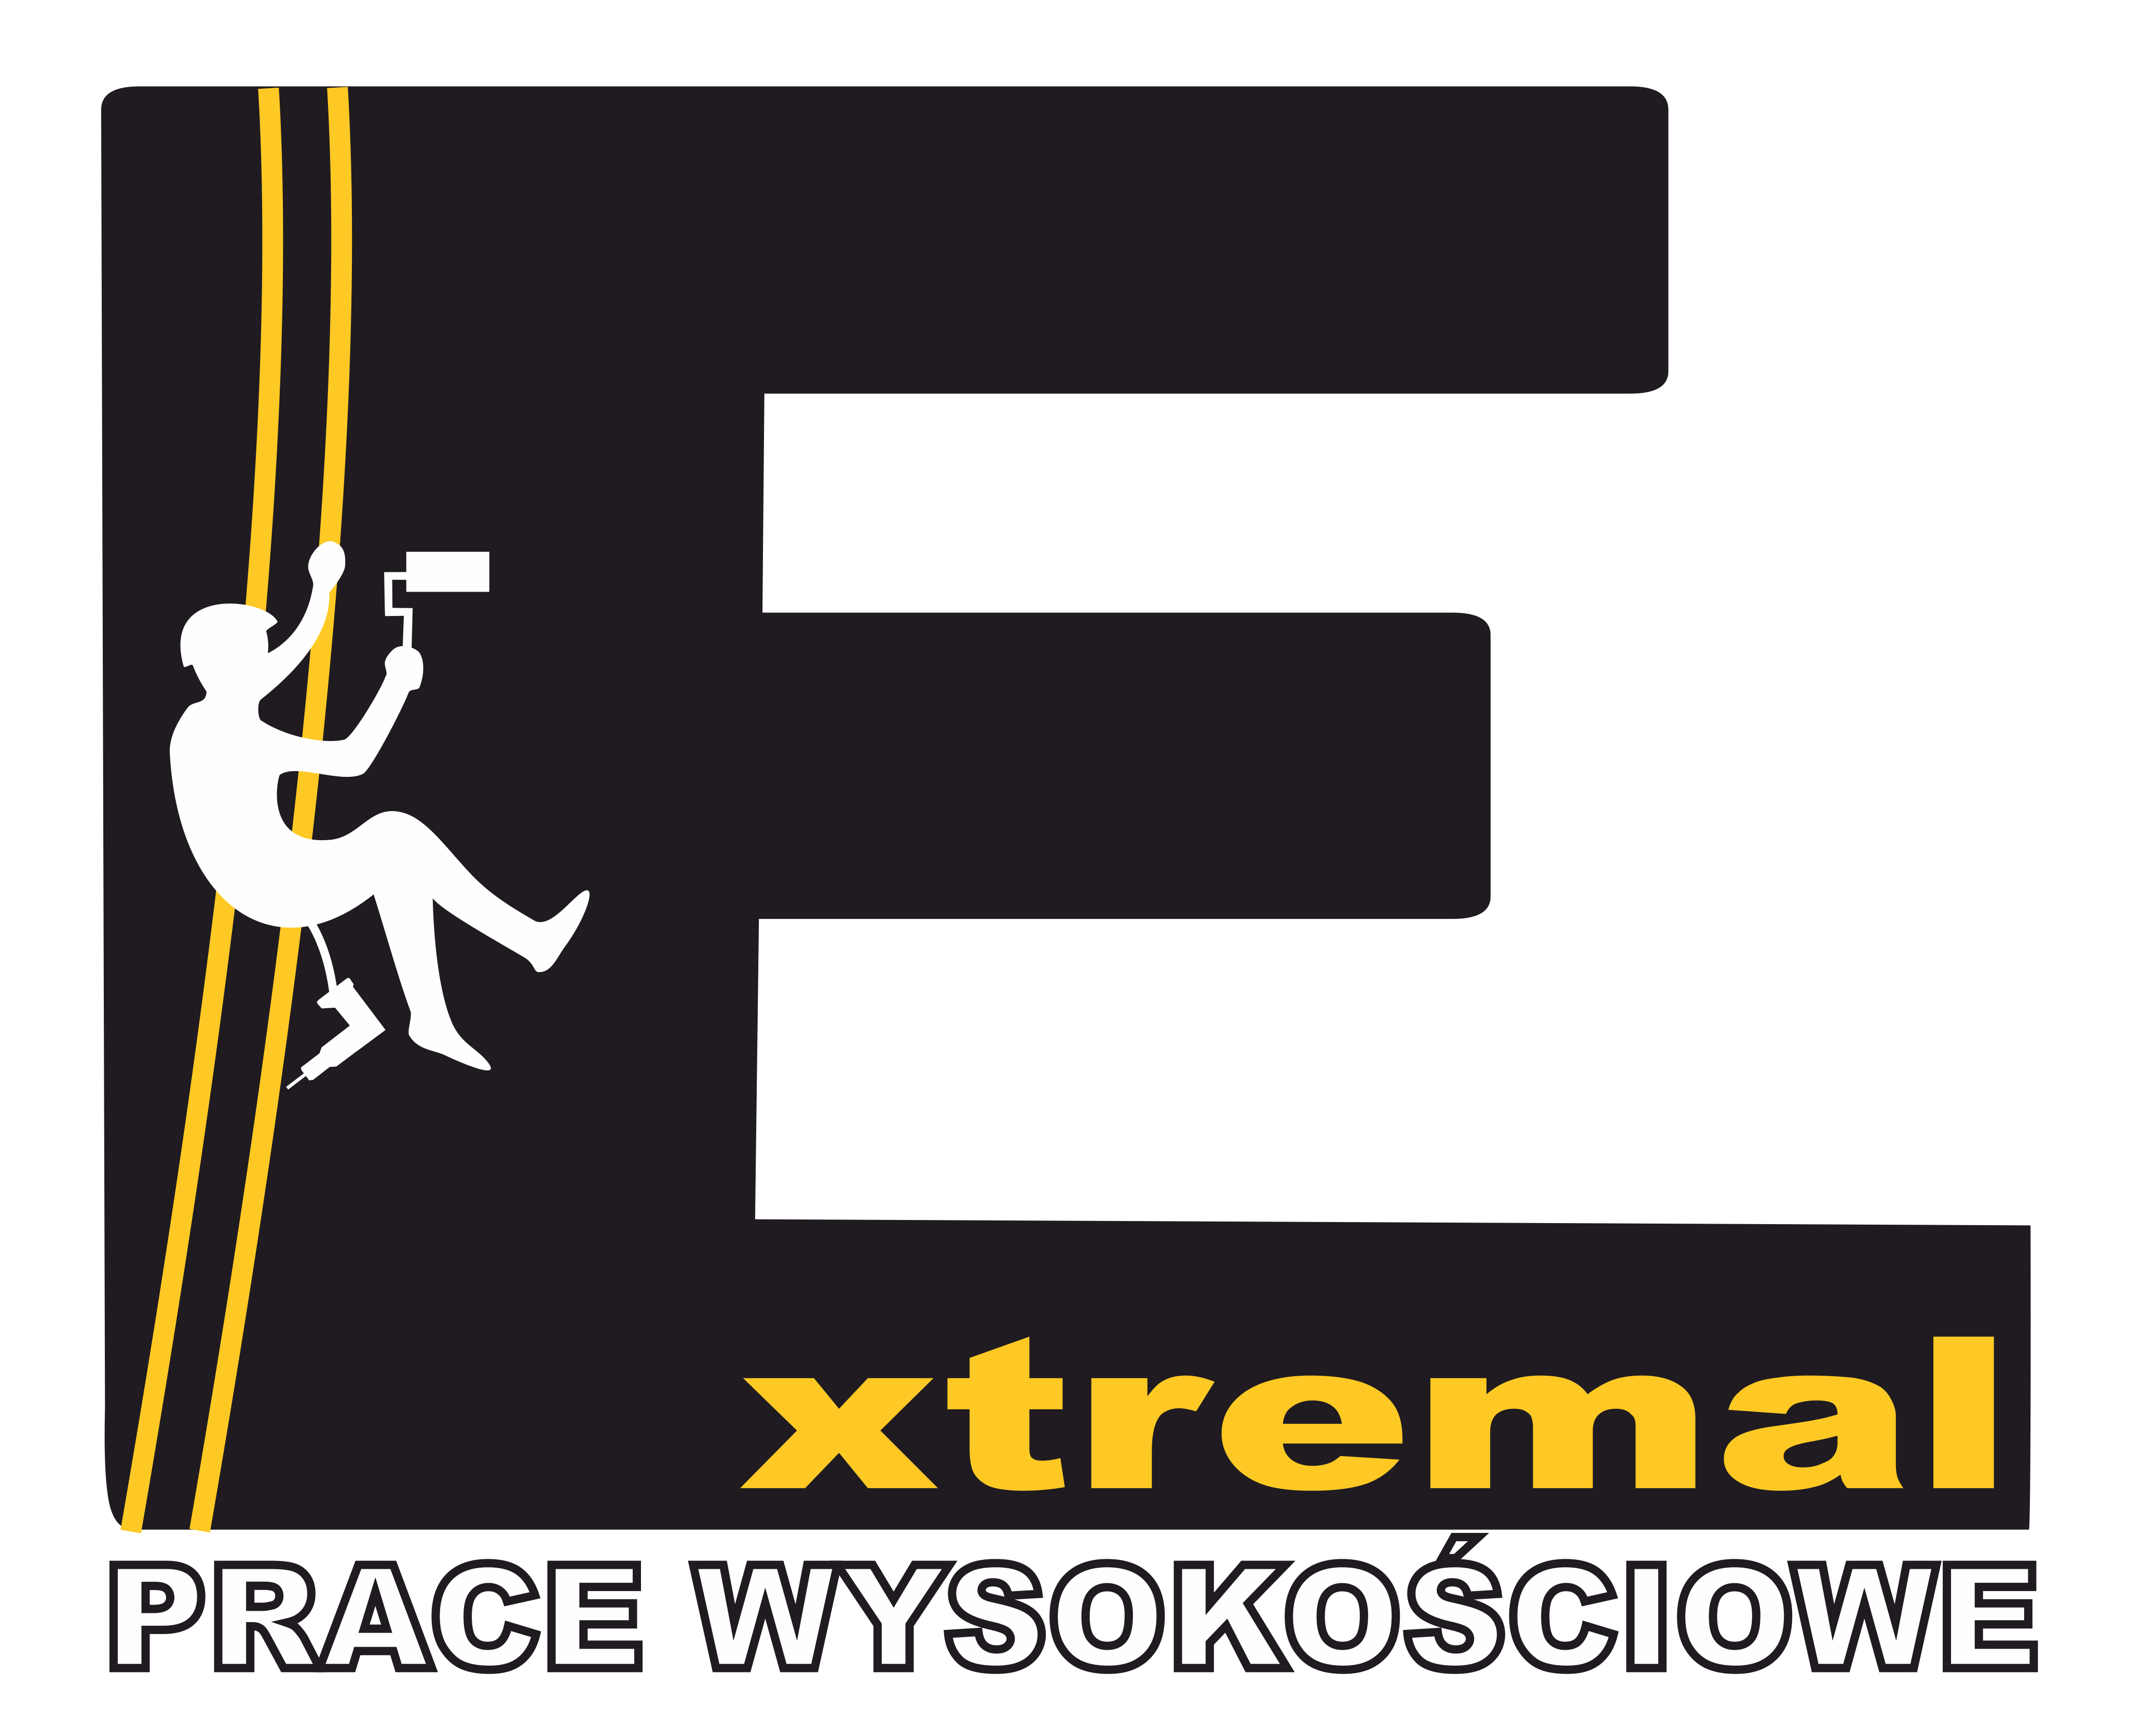 Extremal - Prace wysokościowe, usługi wysokościowe - Kraków, mycie elwacji, mycie okien na wysokości